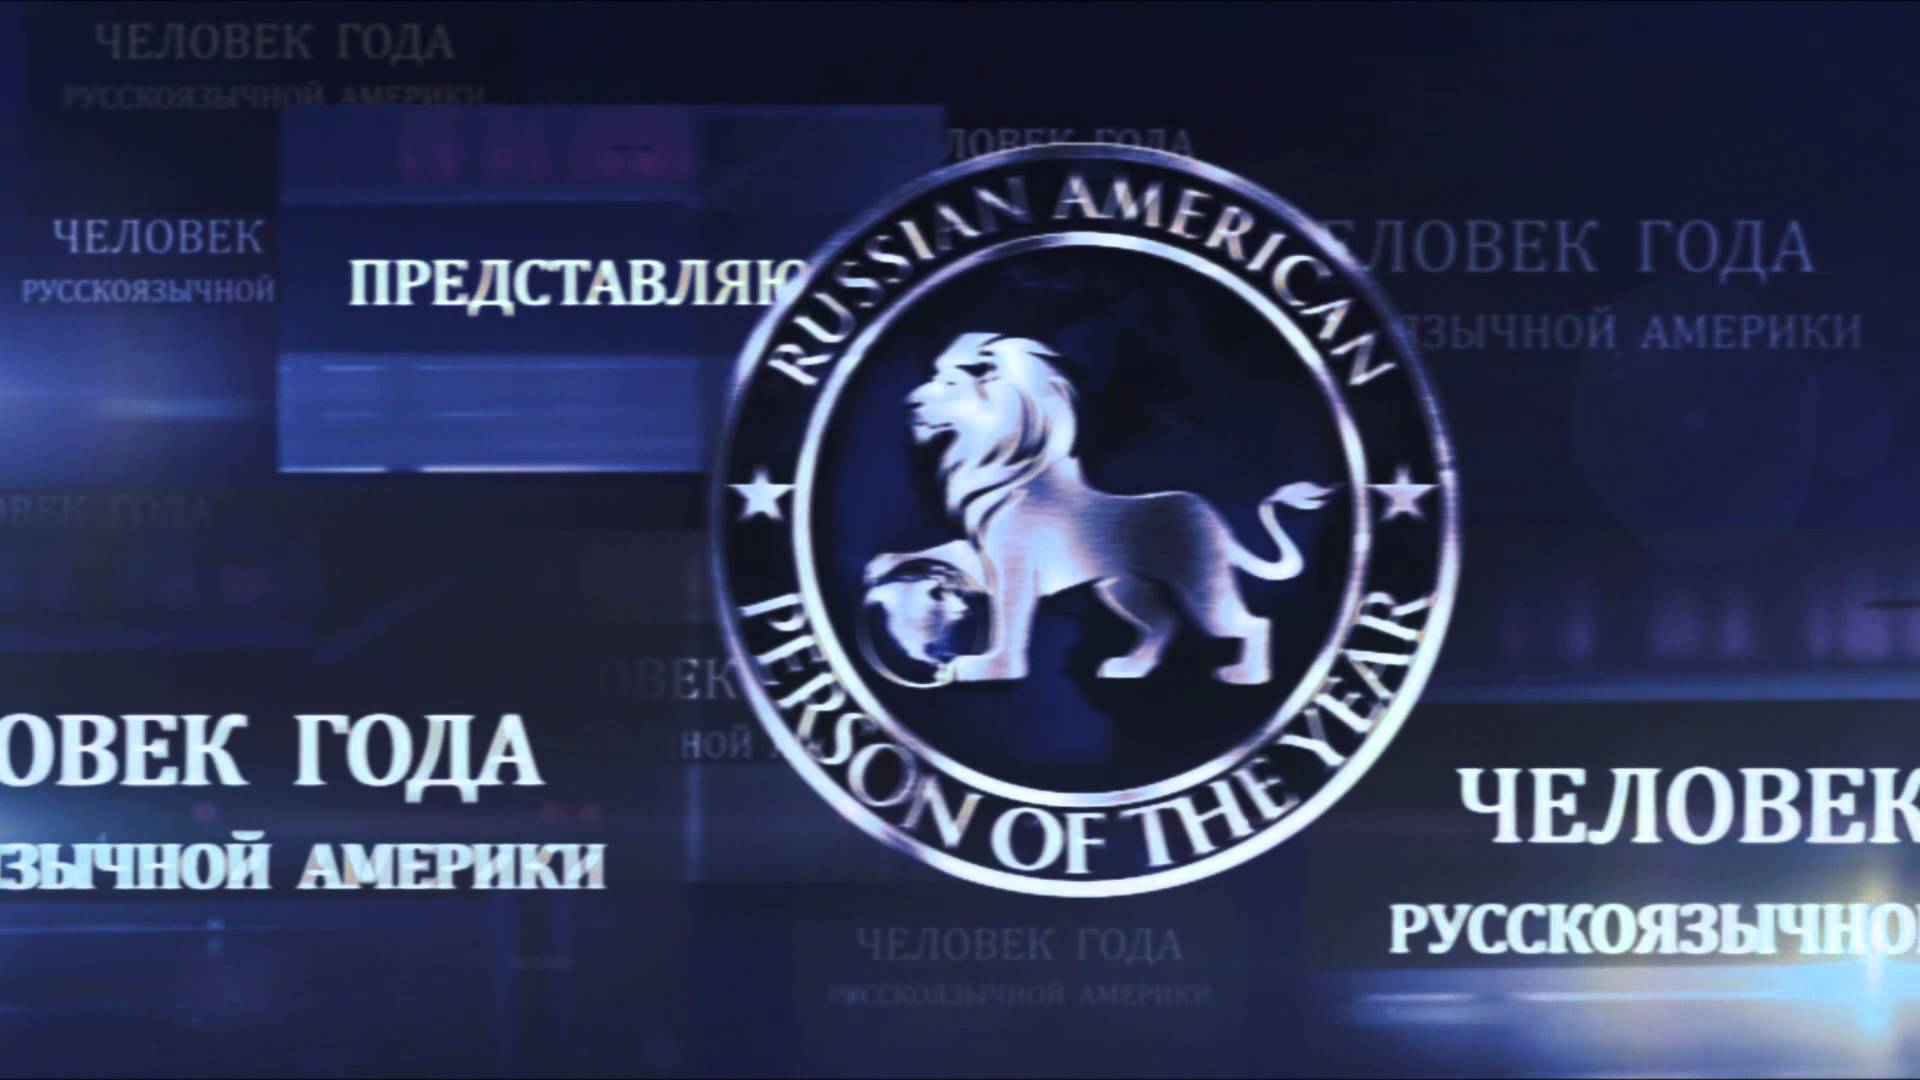 В США определились с номинантами конкурса "Человек года русскоязычной Америки"